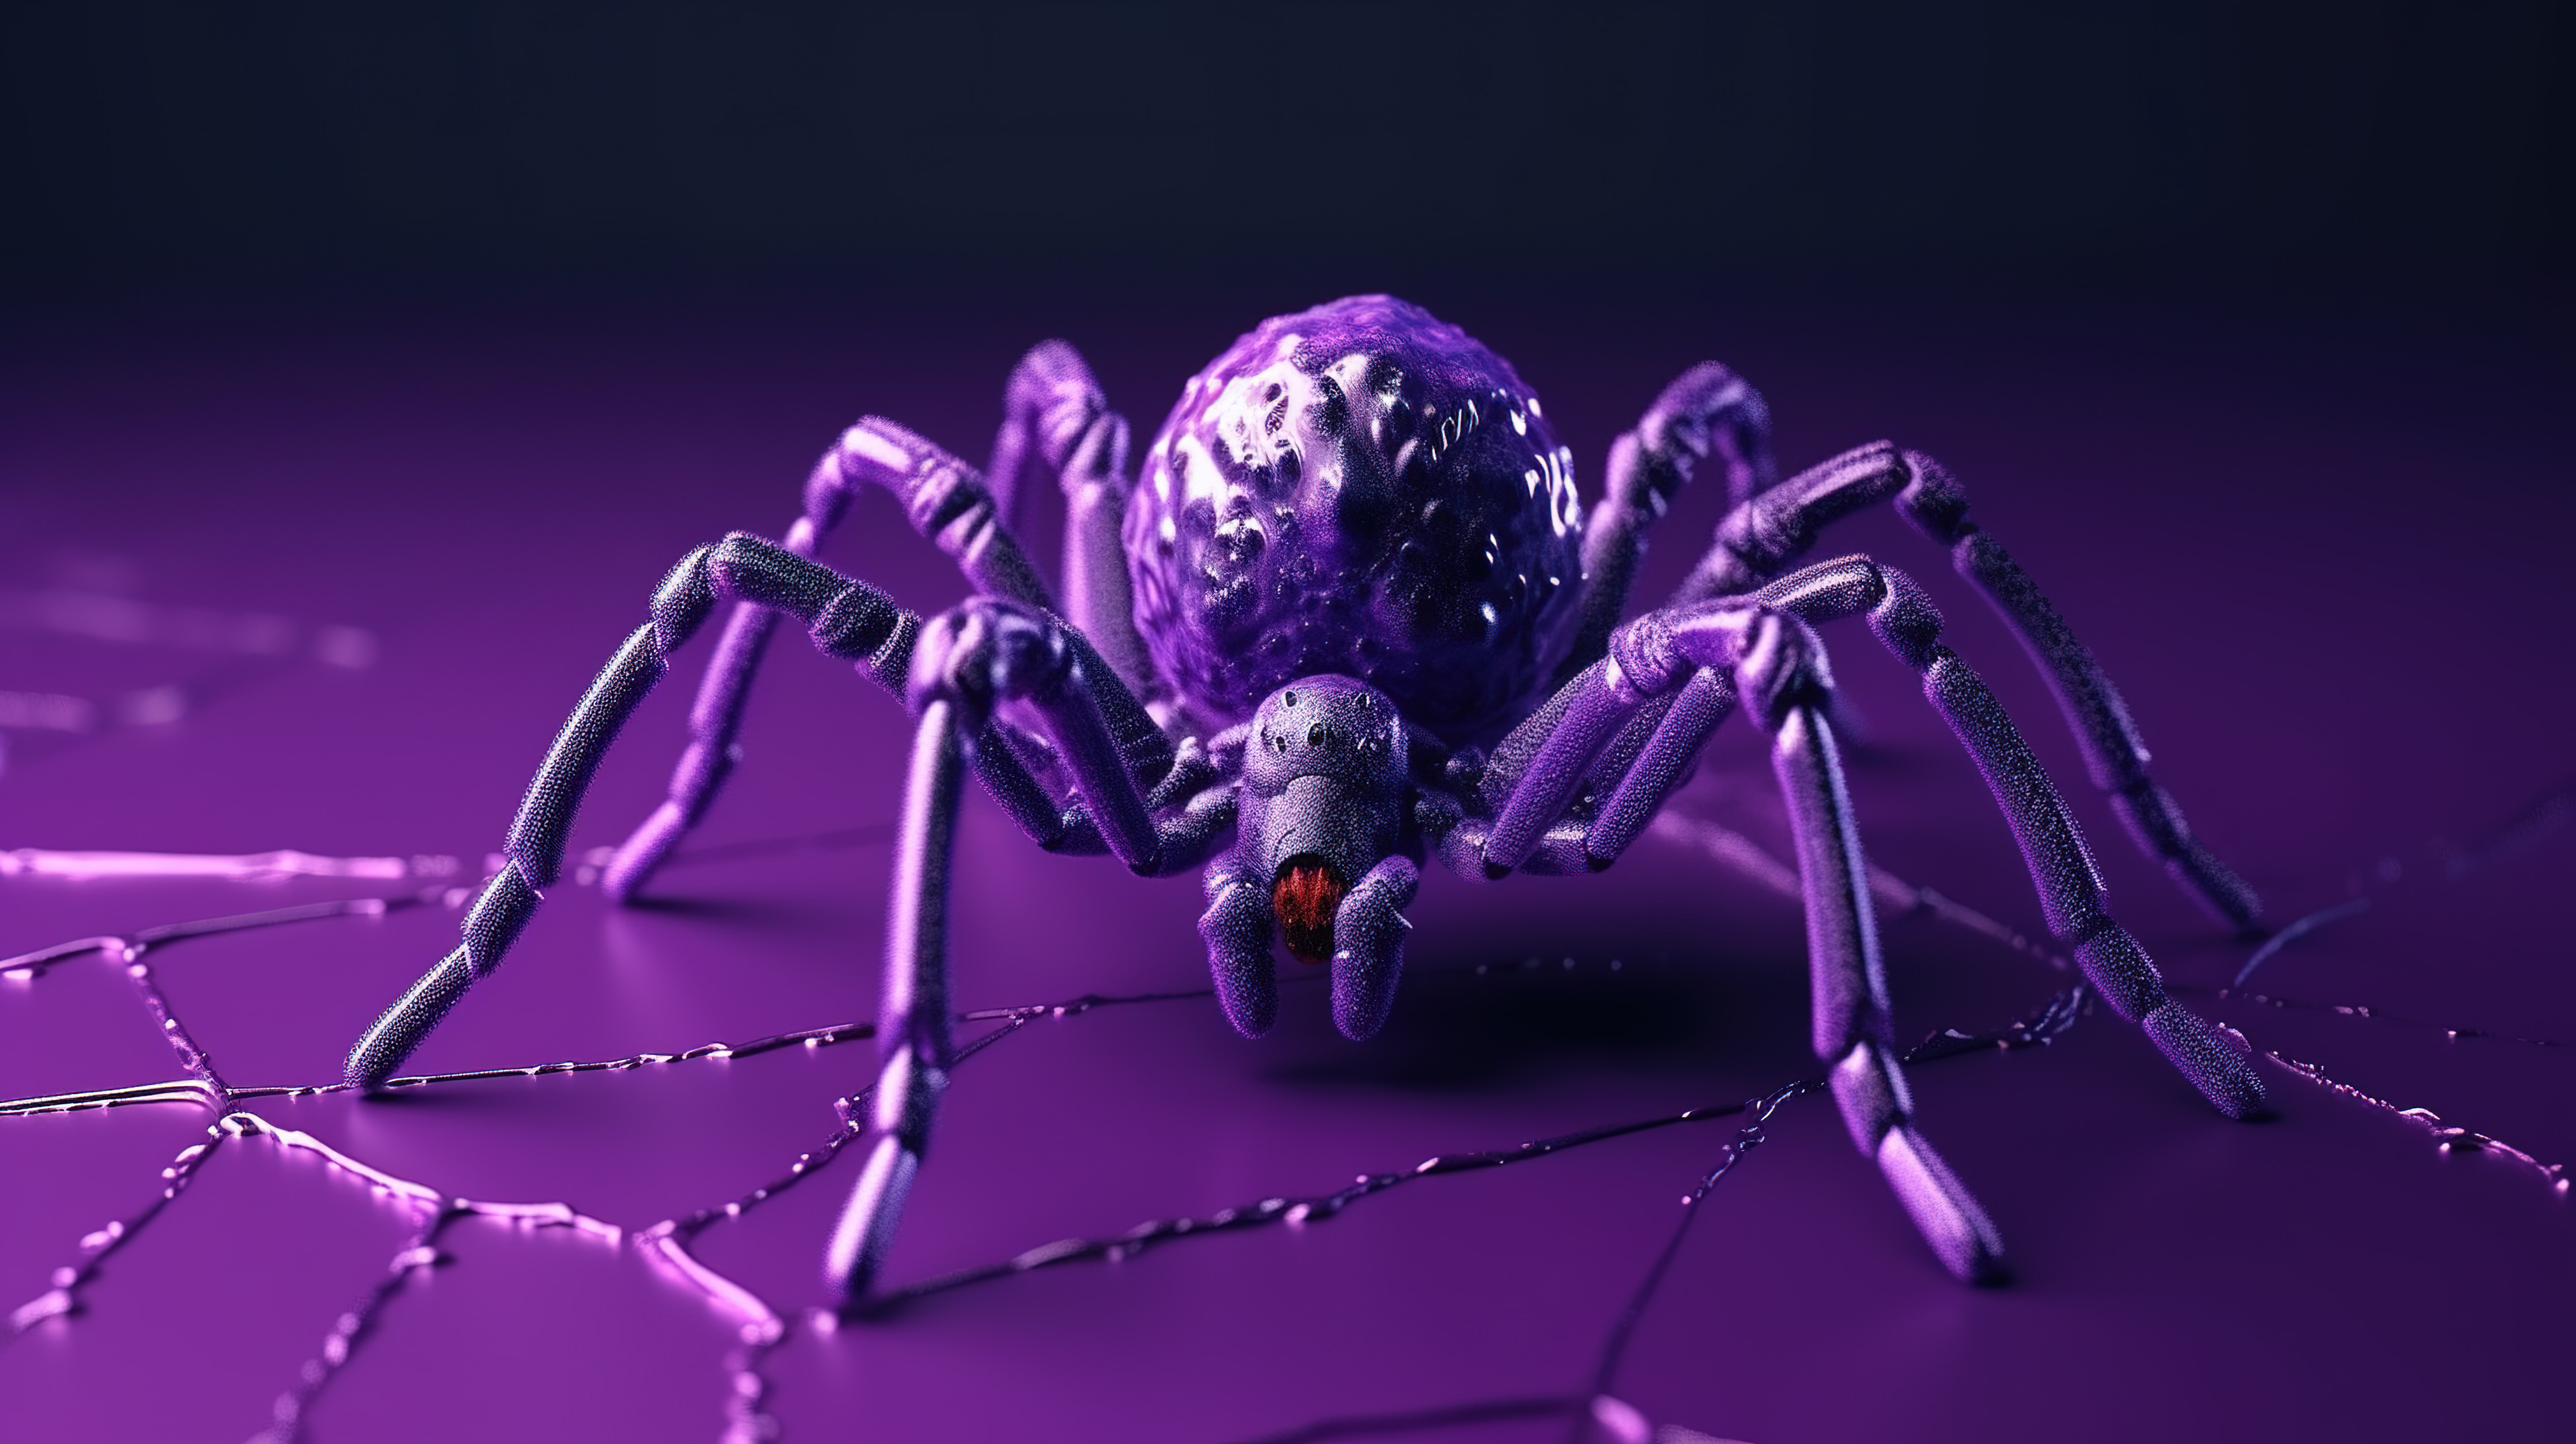 怪异的万圣节装饰紫色蜘蛛以 3D 像素风格编织网图片